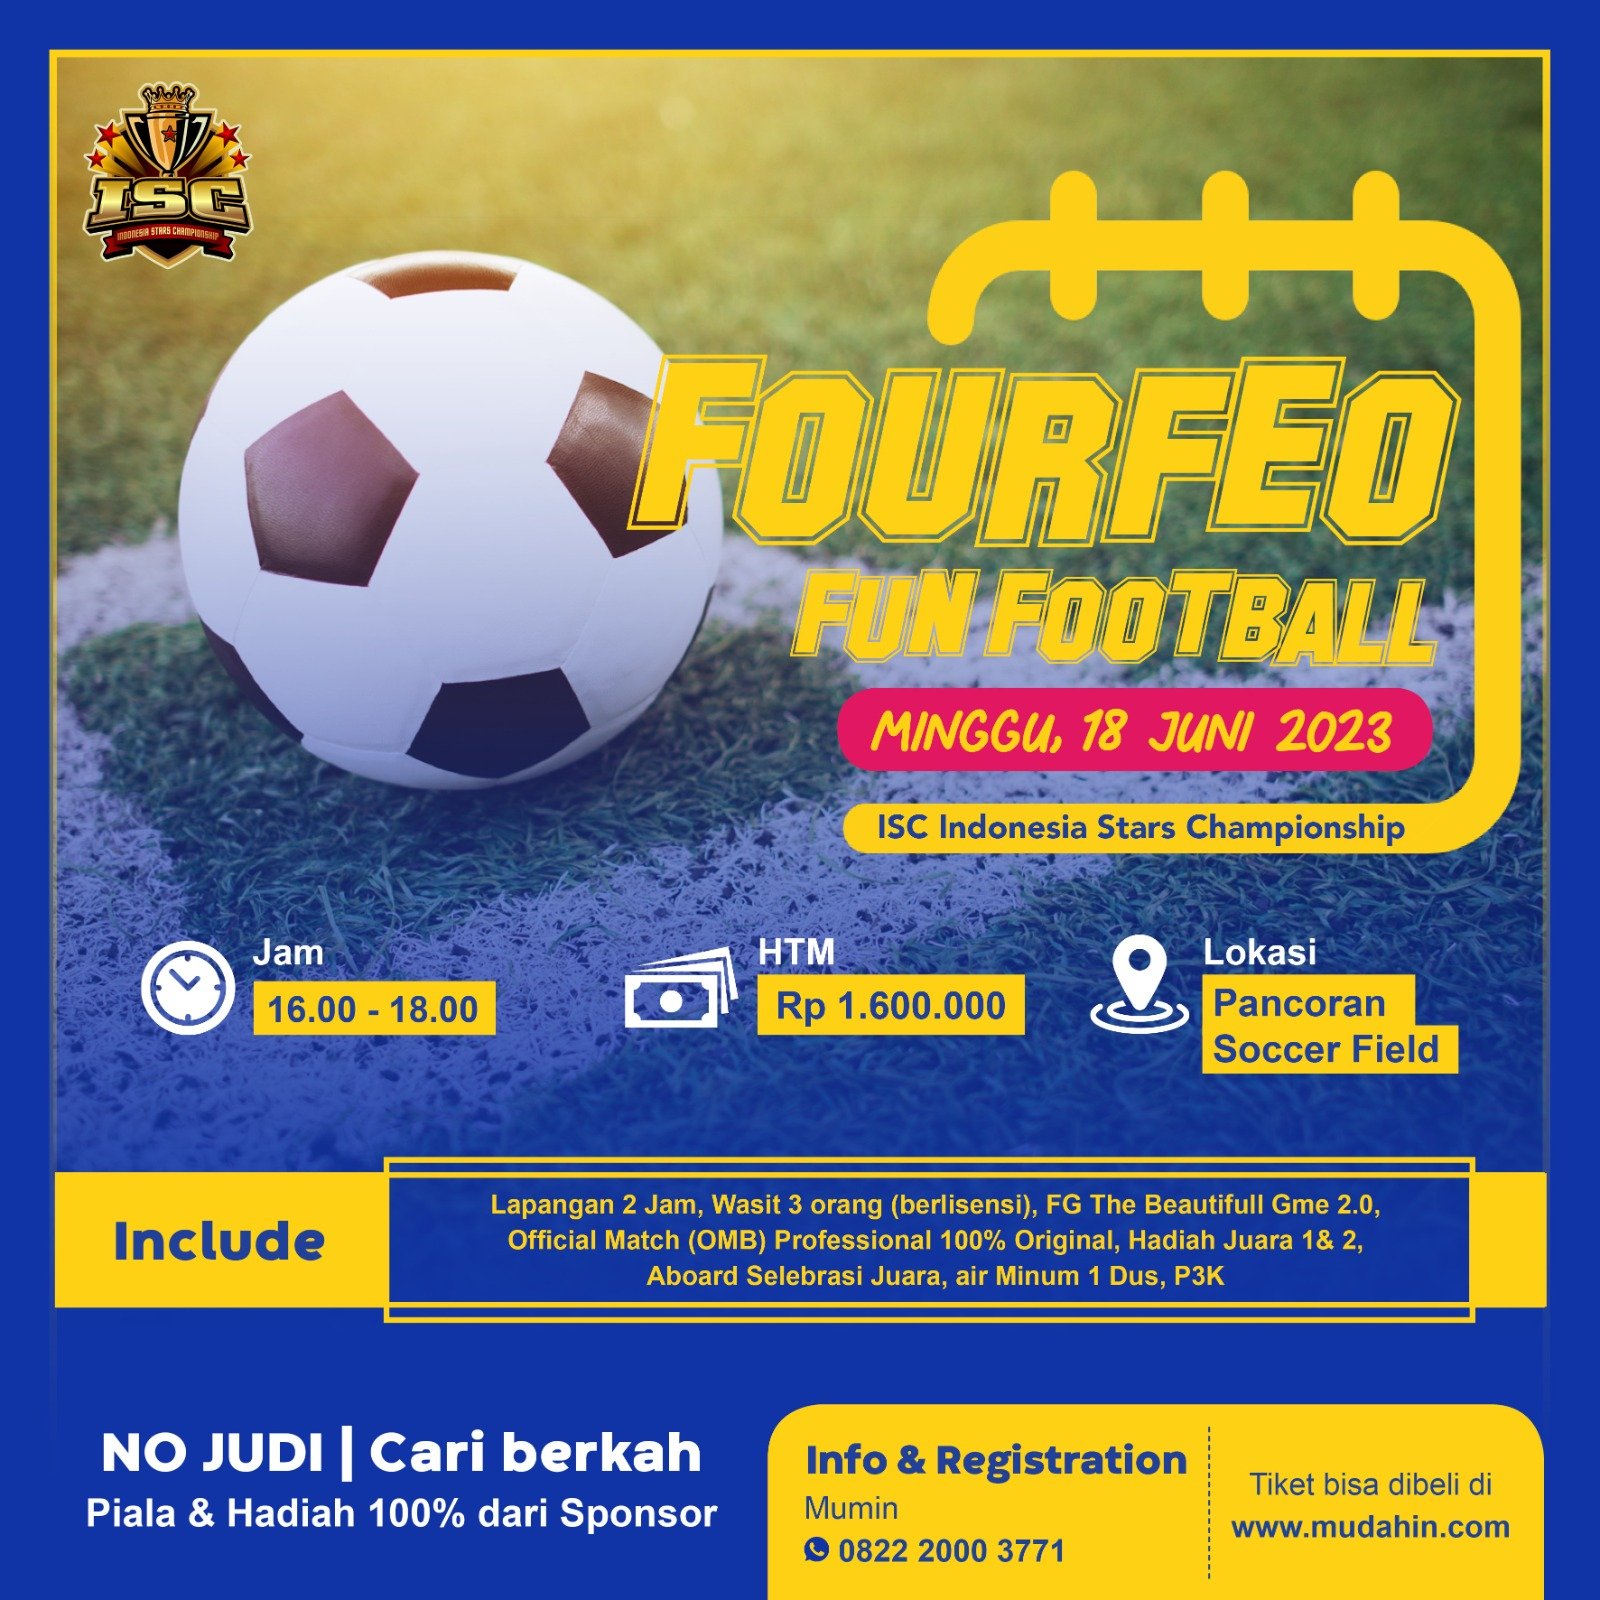 ISC Fourfeo Fun Football, Minggu 18 Juni 2023